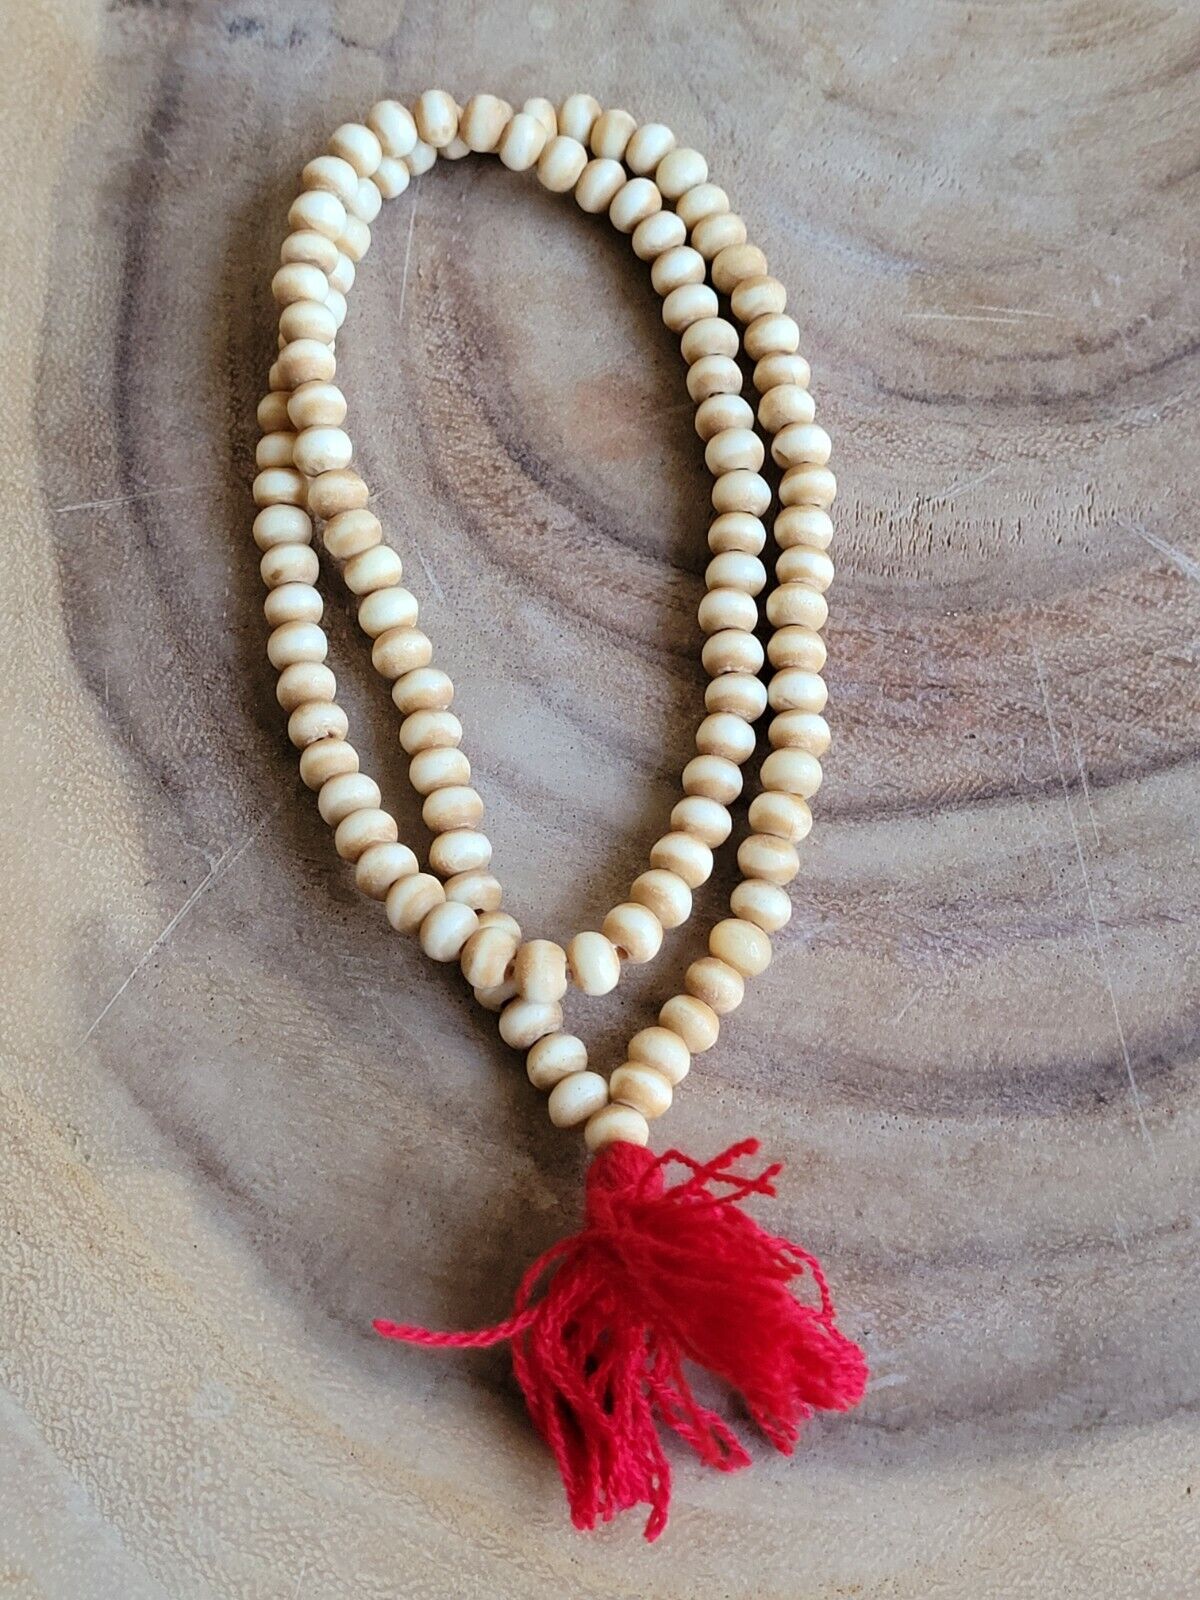 Buffalo Bone 108 8.5mm Buddhist Prayer Beads Tibetan Mala Necklace 